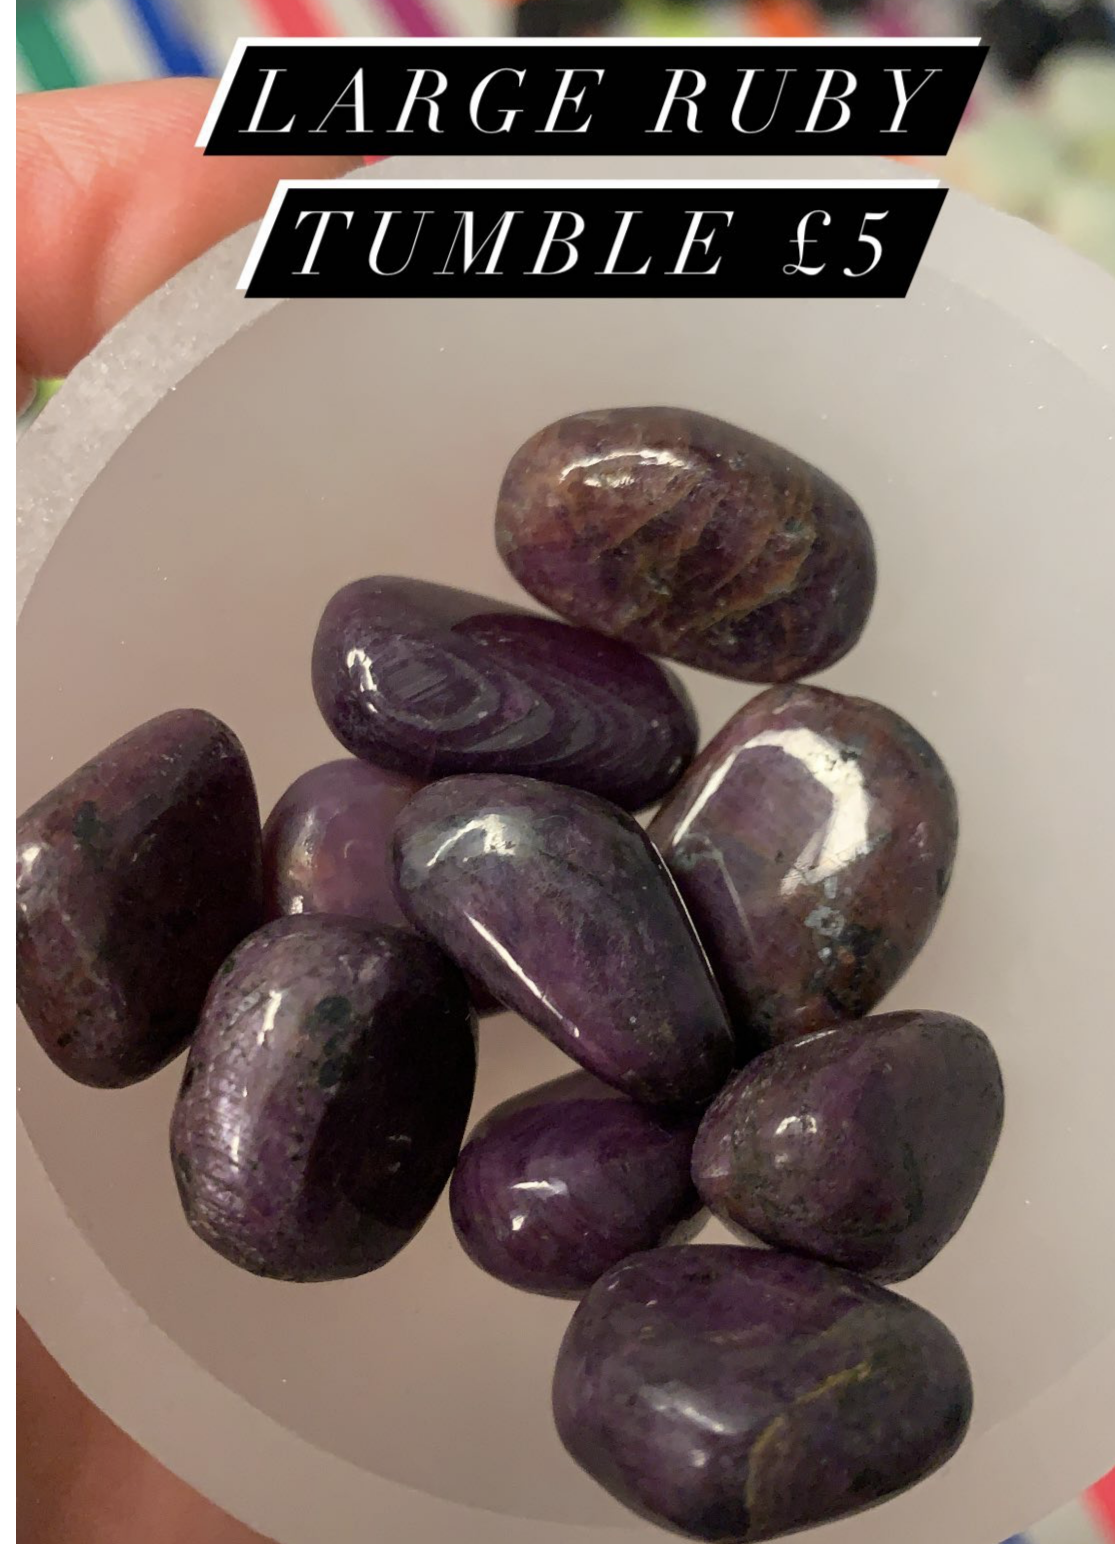 A Ruby tumble tumblestone